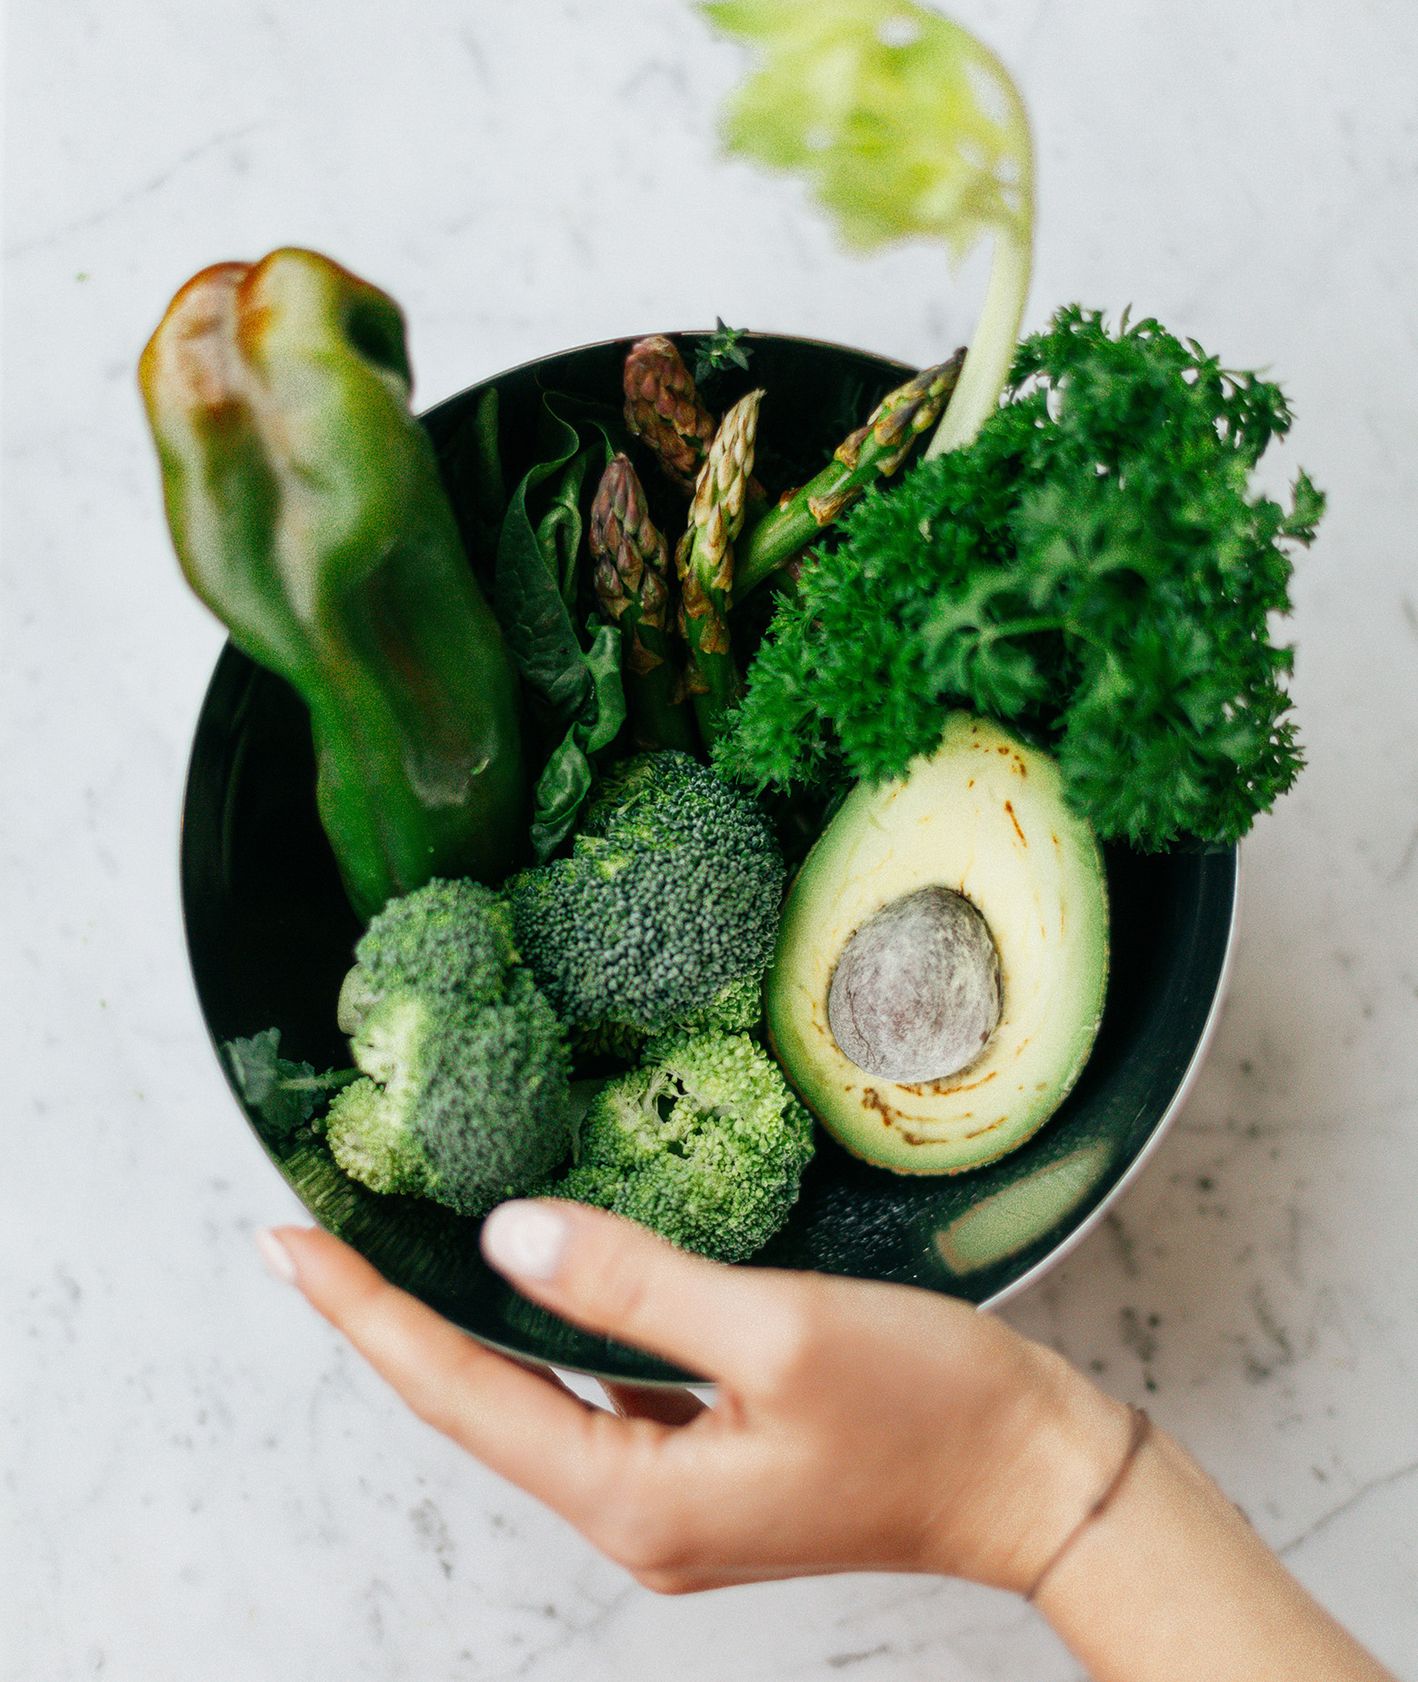 Rodzaje diet. Miska zielonych warzyw - brokuły, seler, awokado (fot. Daria Shevtsova / pexels.com)